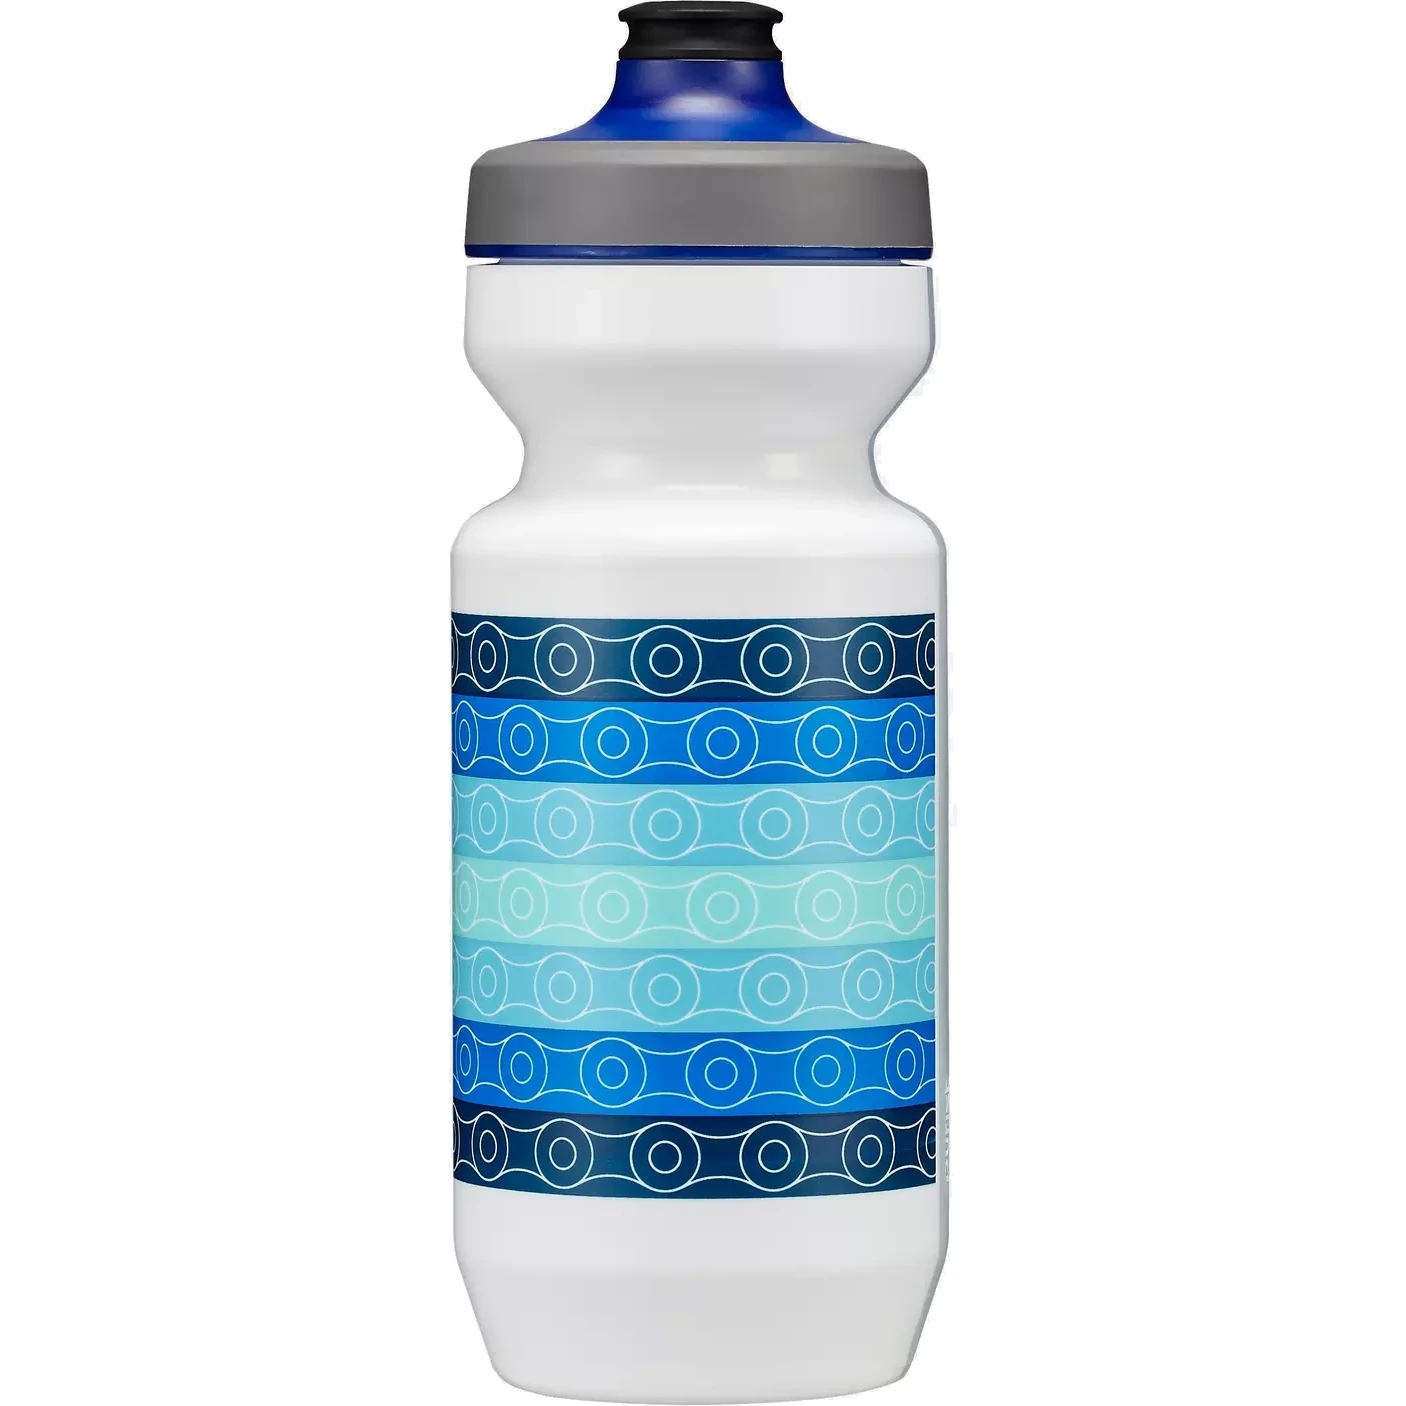 Produktbild von Specialized Purist WaterGate Trinkflasche 650ml - Chains White